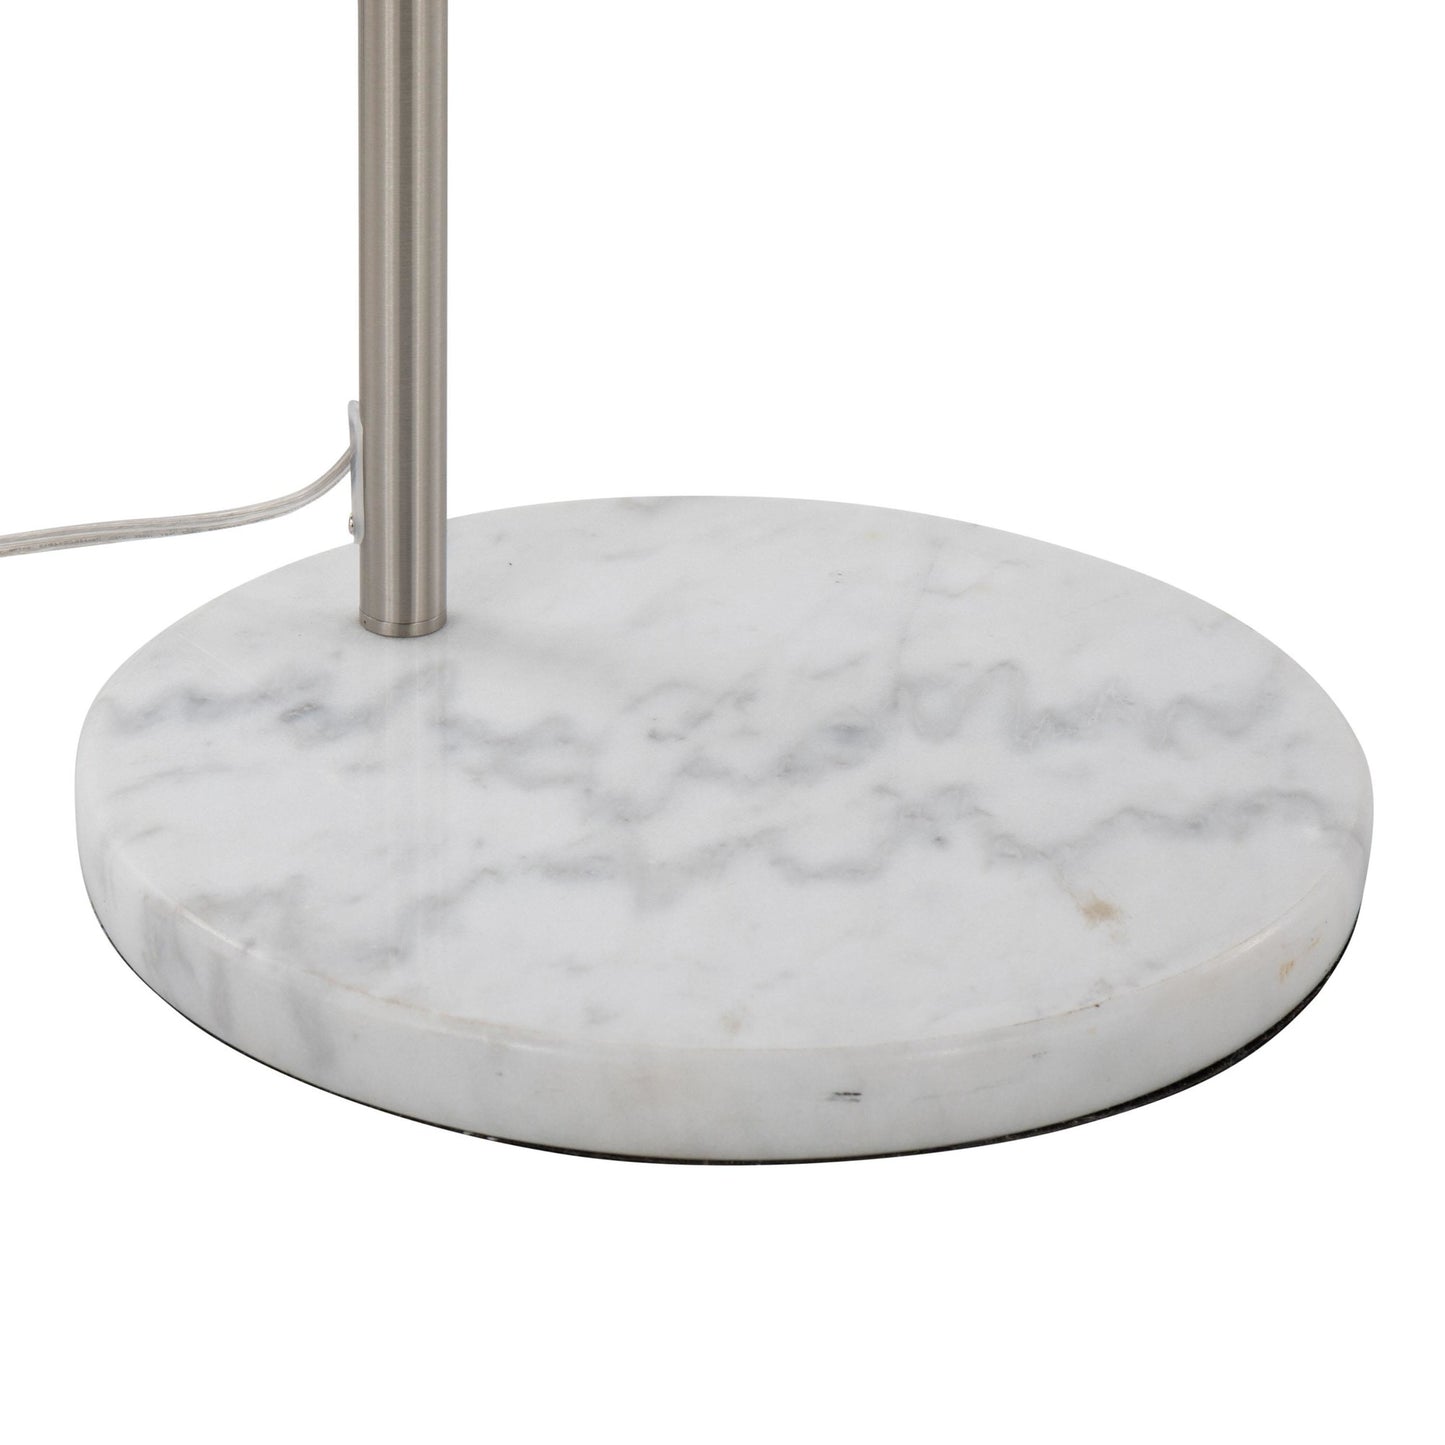 March Floor Lamp Metallic By LumiSource | Floor Lamps | Modishstore - 5